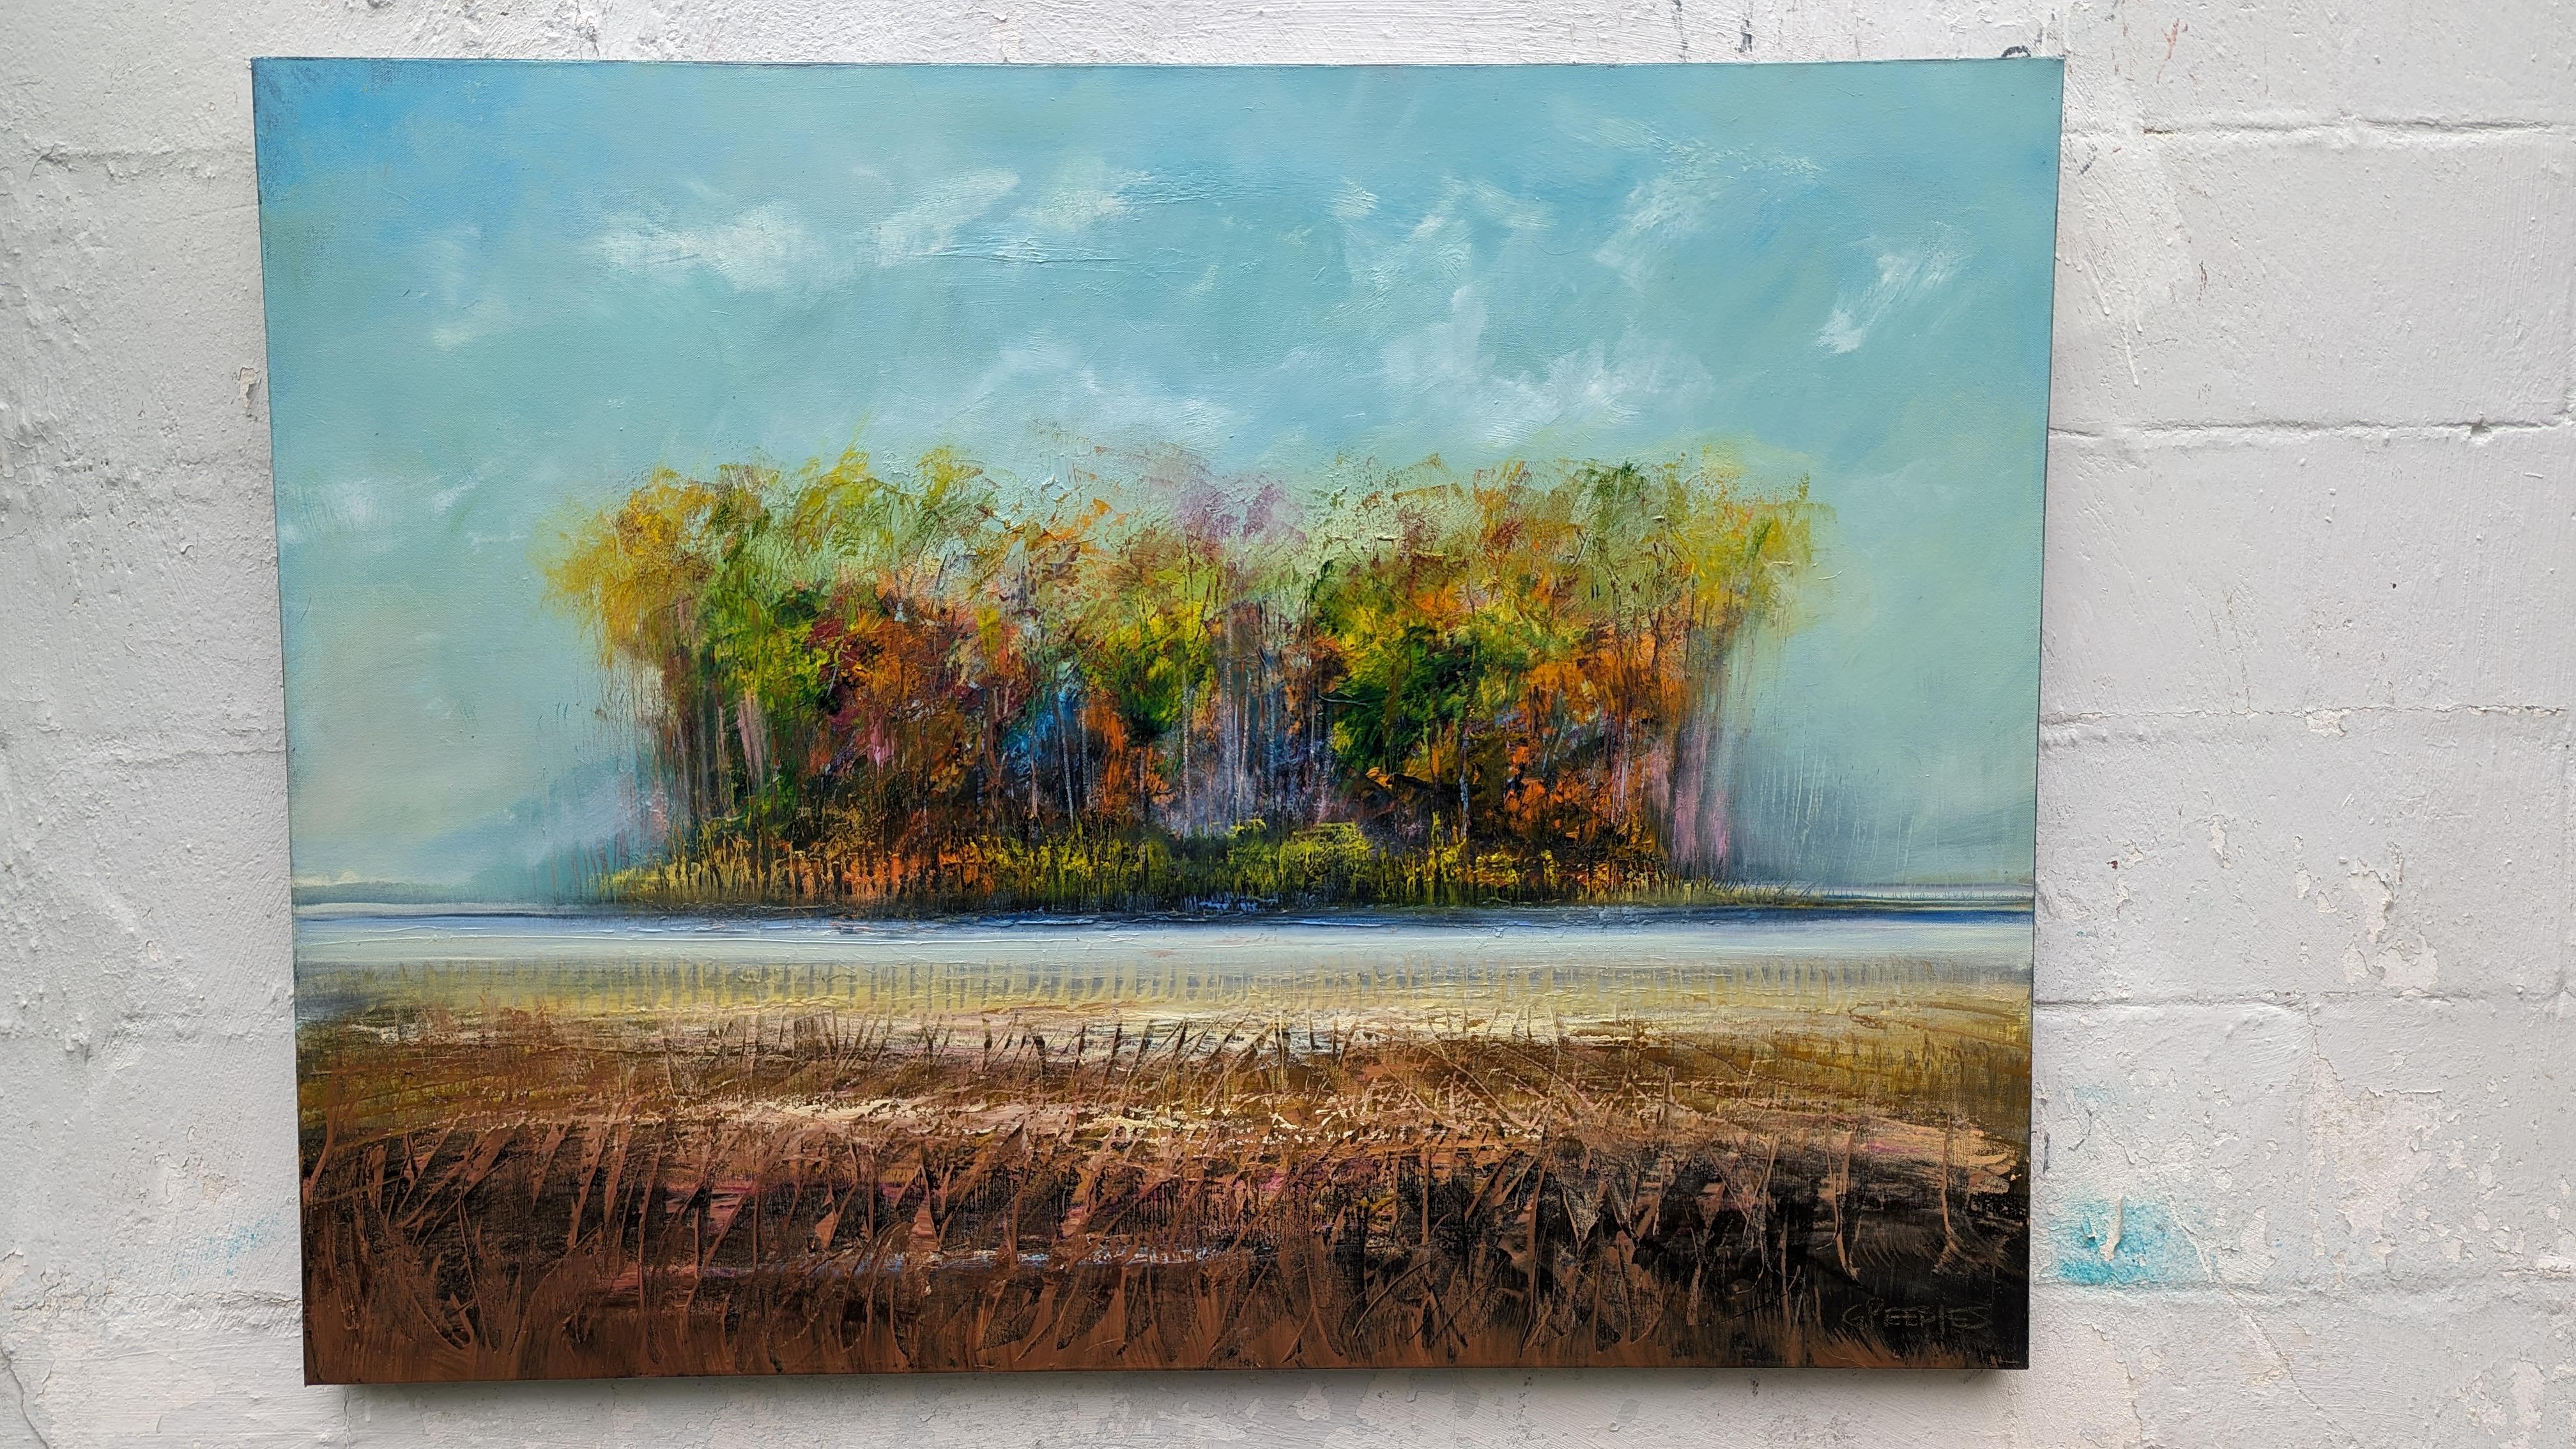 <p>Kommentare des Künstlers<br>Der Künstler George Peebles zeigt eine expressionistische Landschaft, die herbstliche Farbtöne in einem Bereich vereint. Die grünen Blätter färben sich im Wechsel der Jahreszeiten feurig rot. Atemberaubende